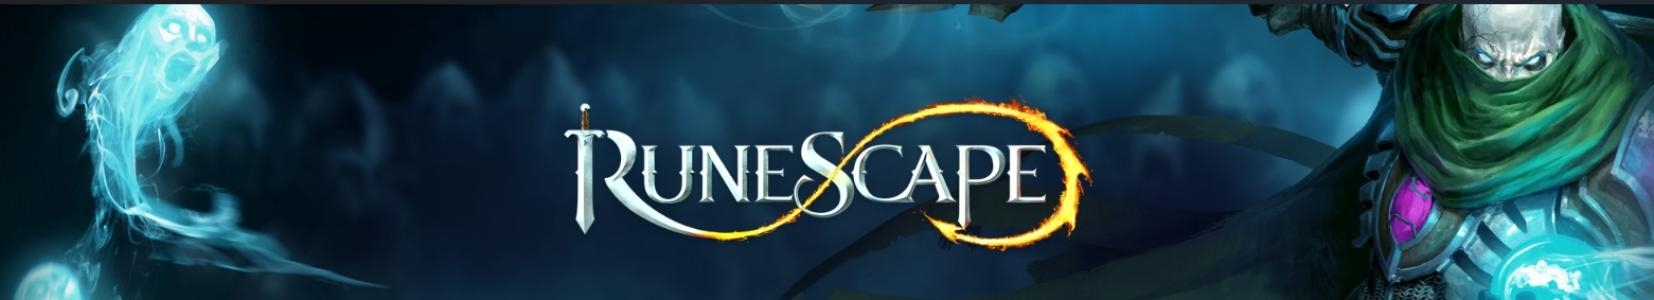 RuneScape banner